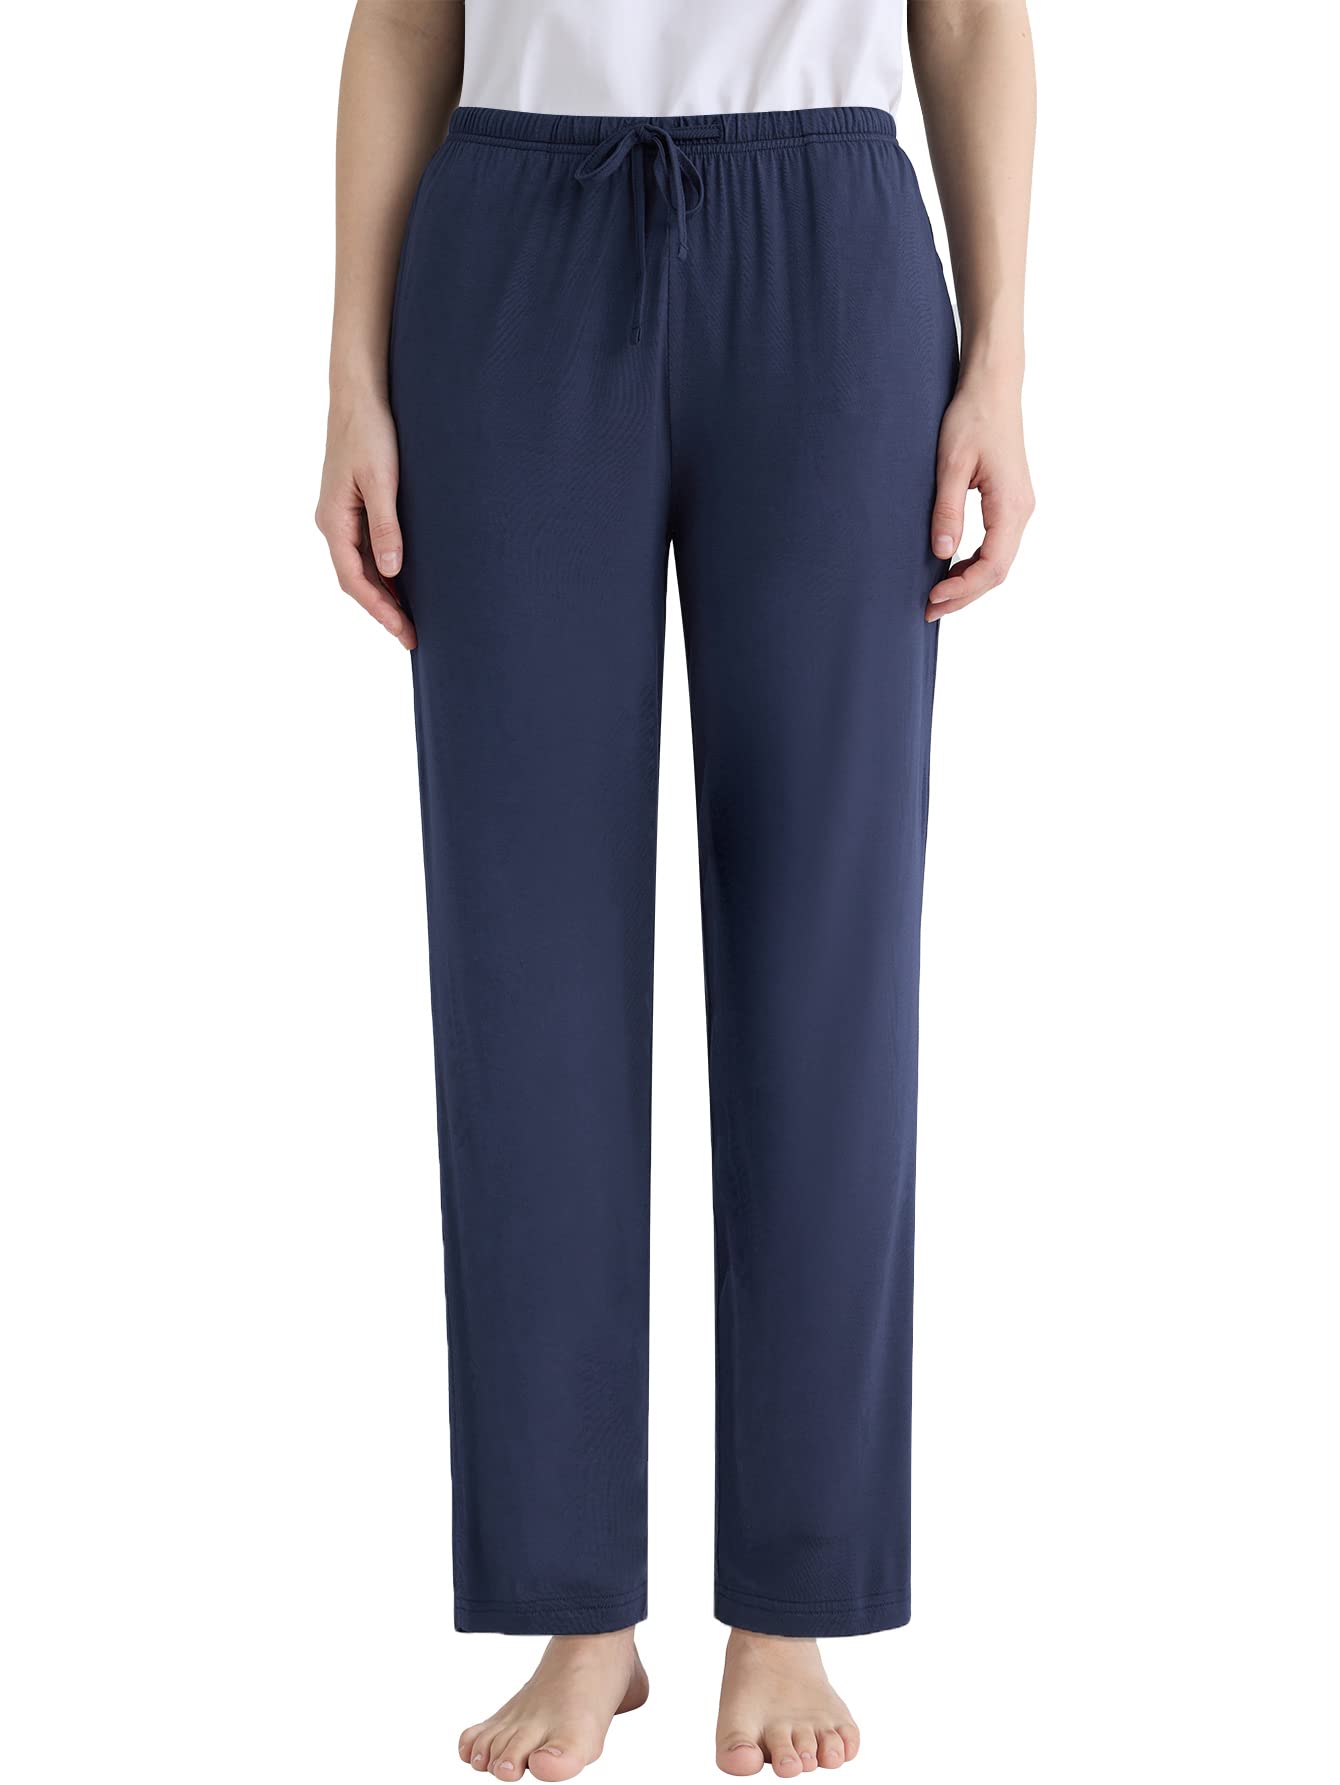 Women's Petite Soft Viscose Pajama Pants with Pockets - Latuza